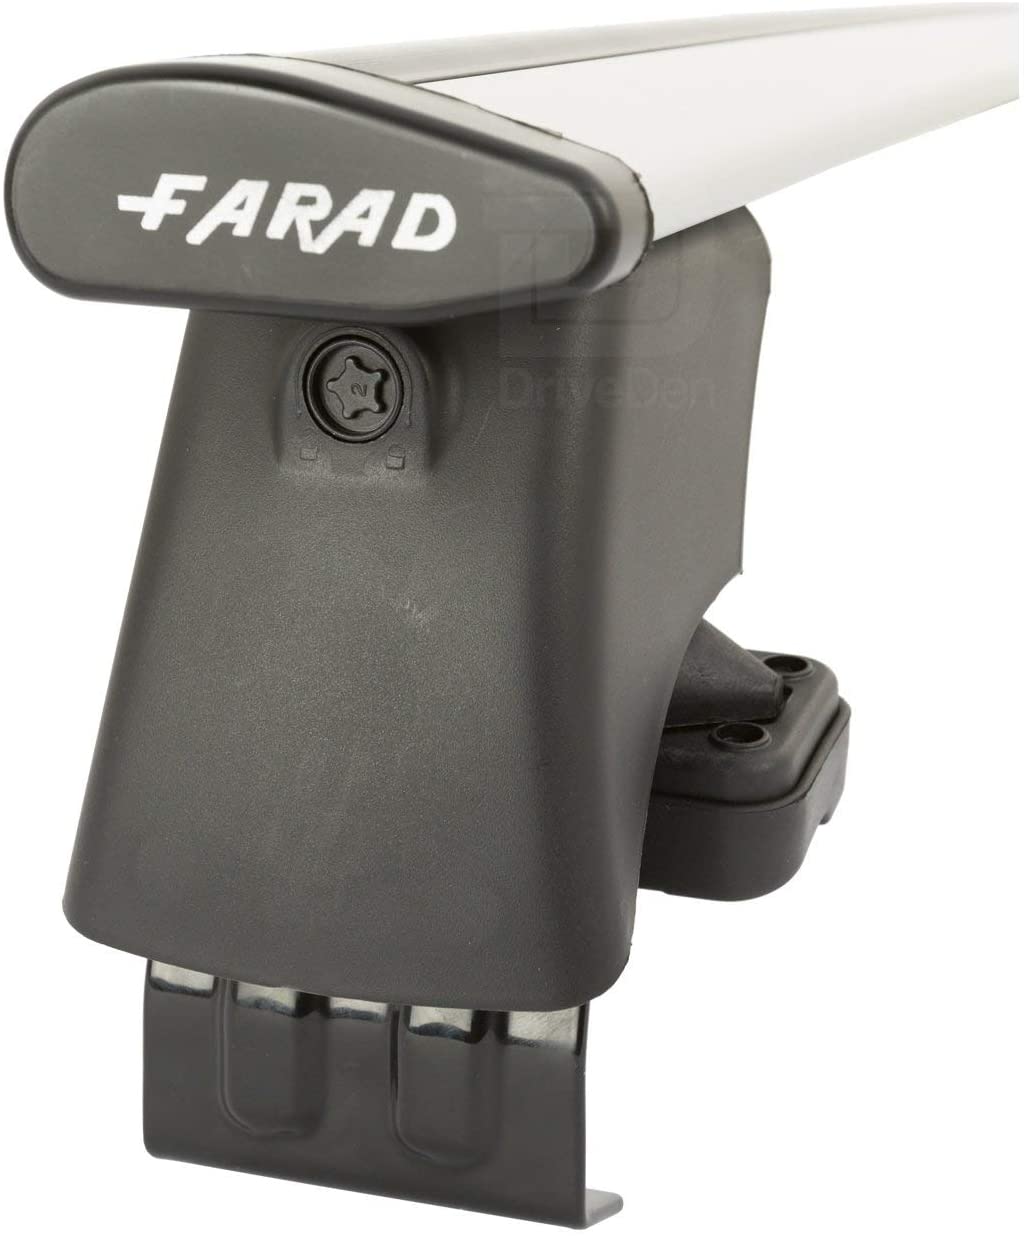 FARAD-Kit H2 per barre portatutto - Citroen C4 2010-2019 (senza corrimano)